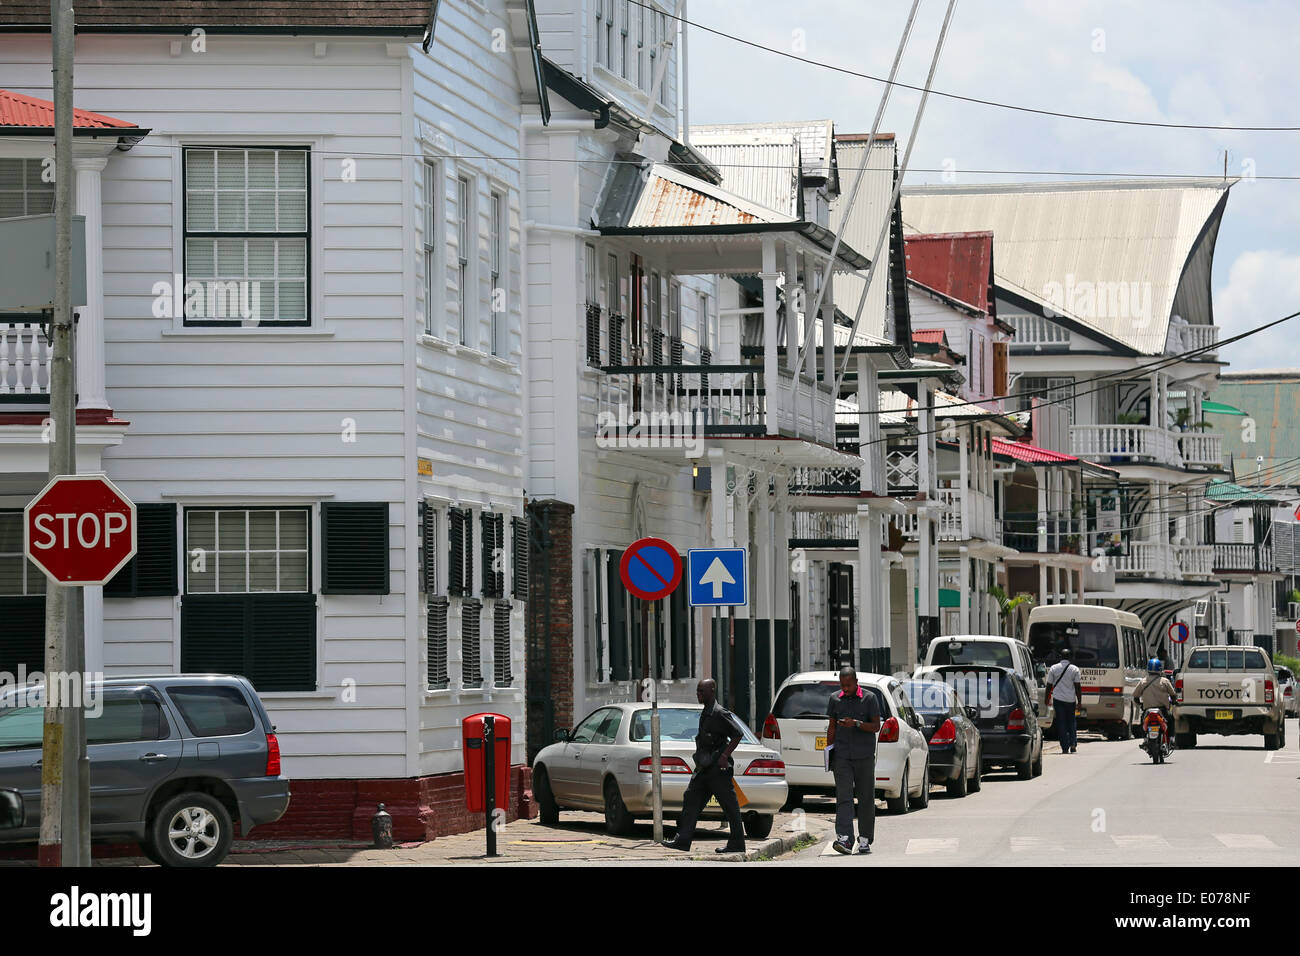 Casas coloniales holandeses en Waterkant Street (costanera) en Paramaribo, Surinam, en América del Sur Foto de stock